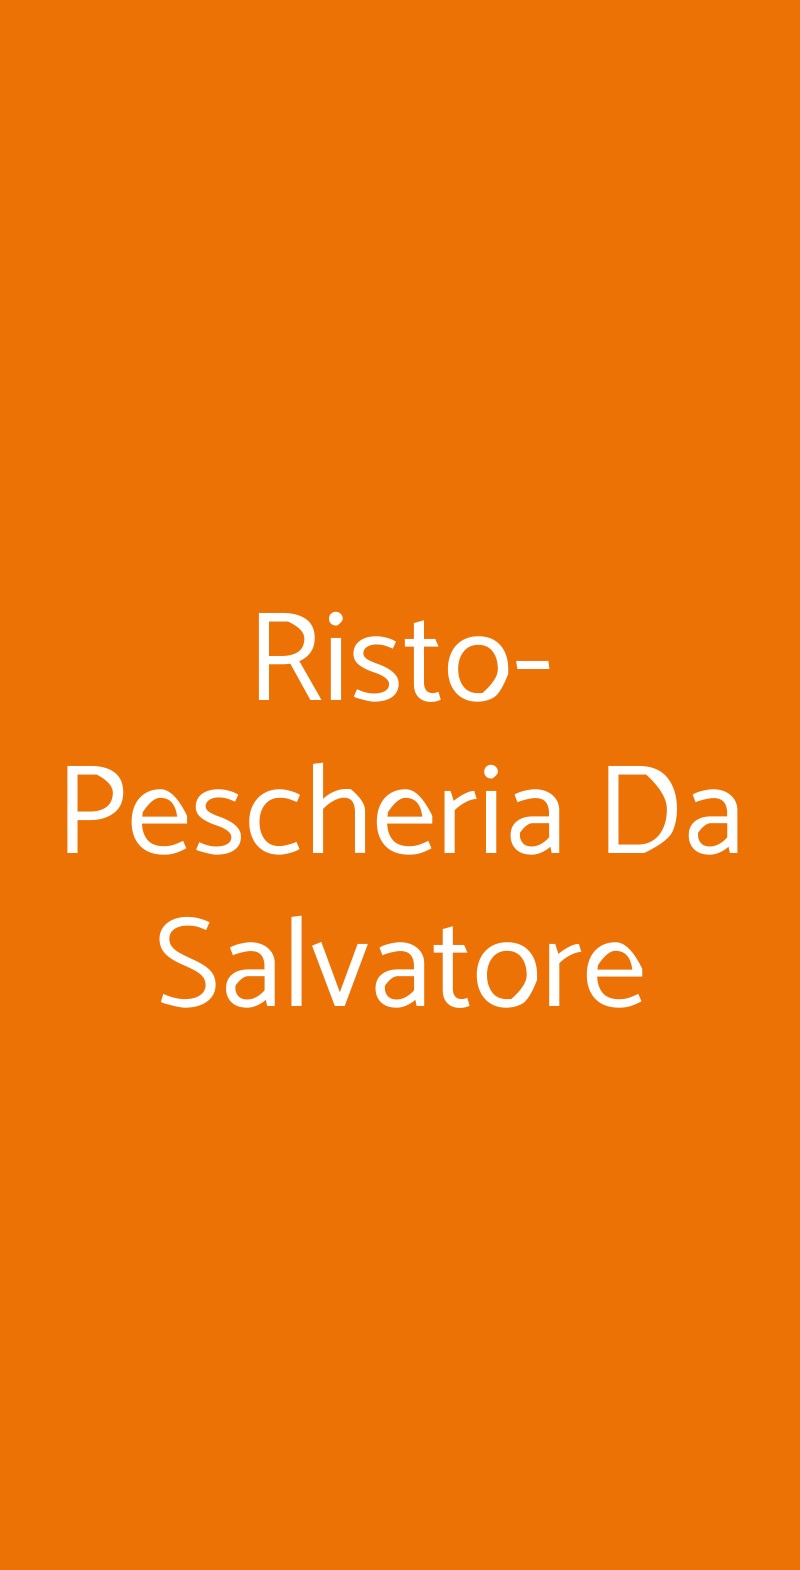 Risto-Pescheria Da Salvatore Napoli menù 1 pagina